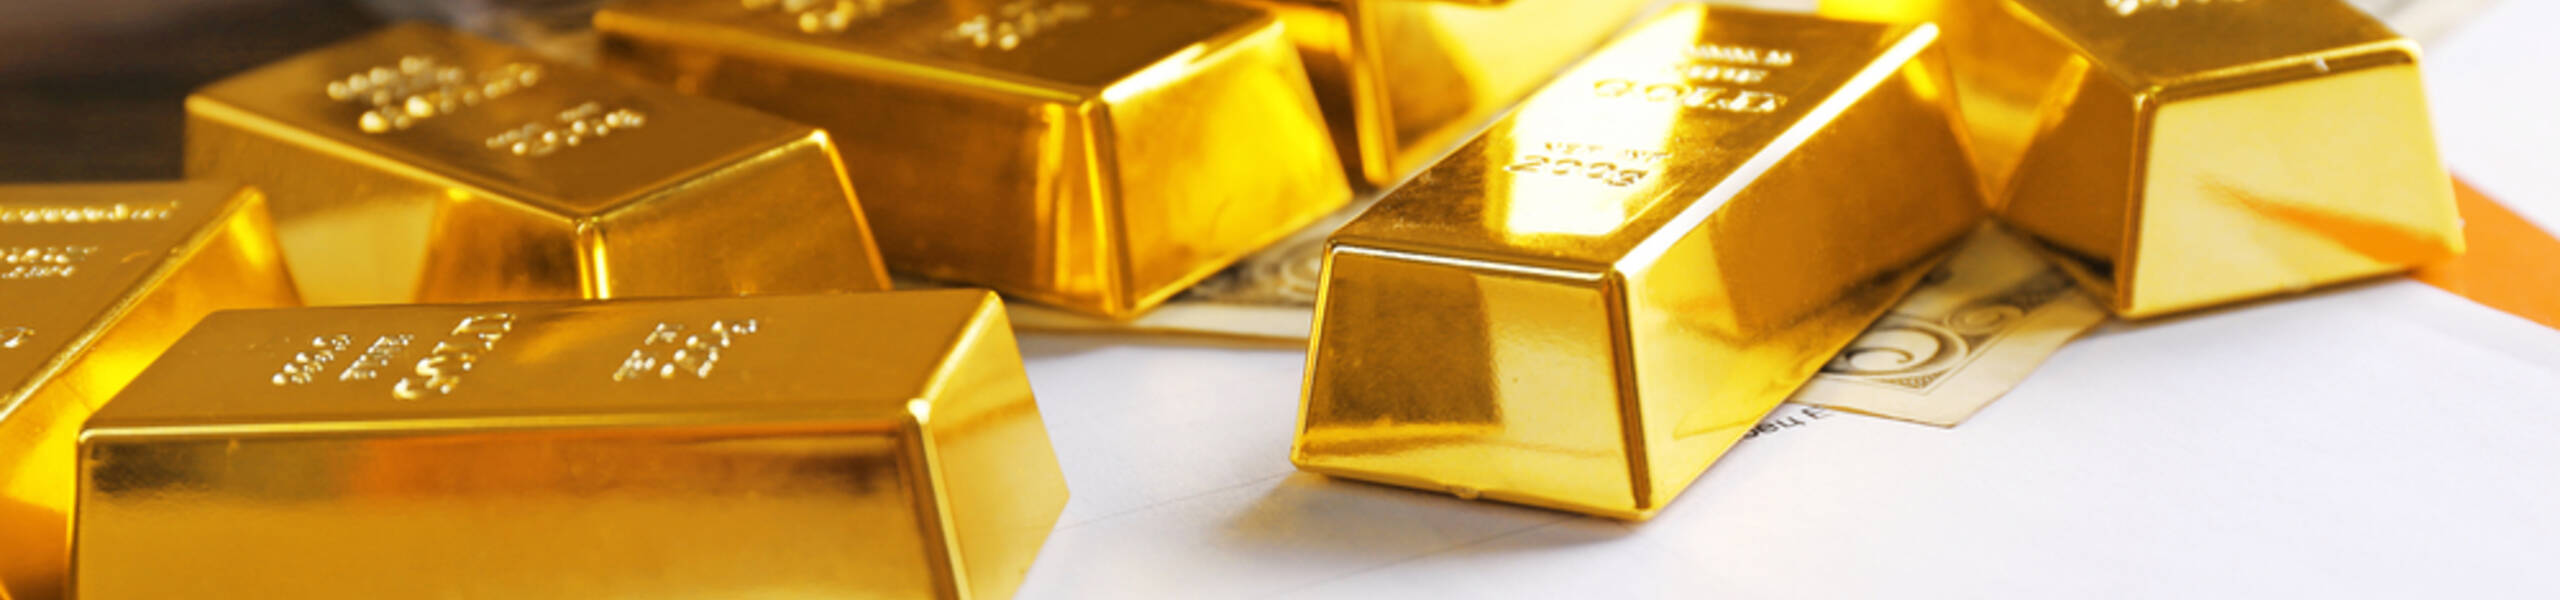 Preços do ouro precisam se manter acima de $ 1721 para evitar quedas subsequentes 